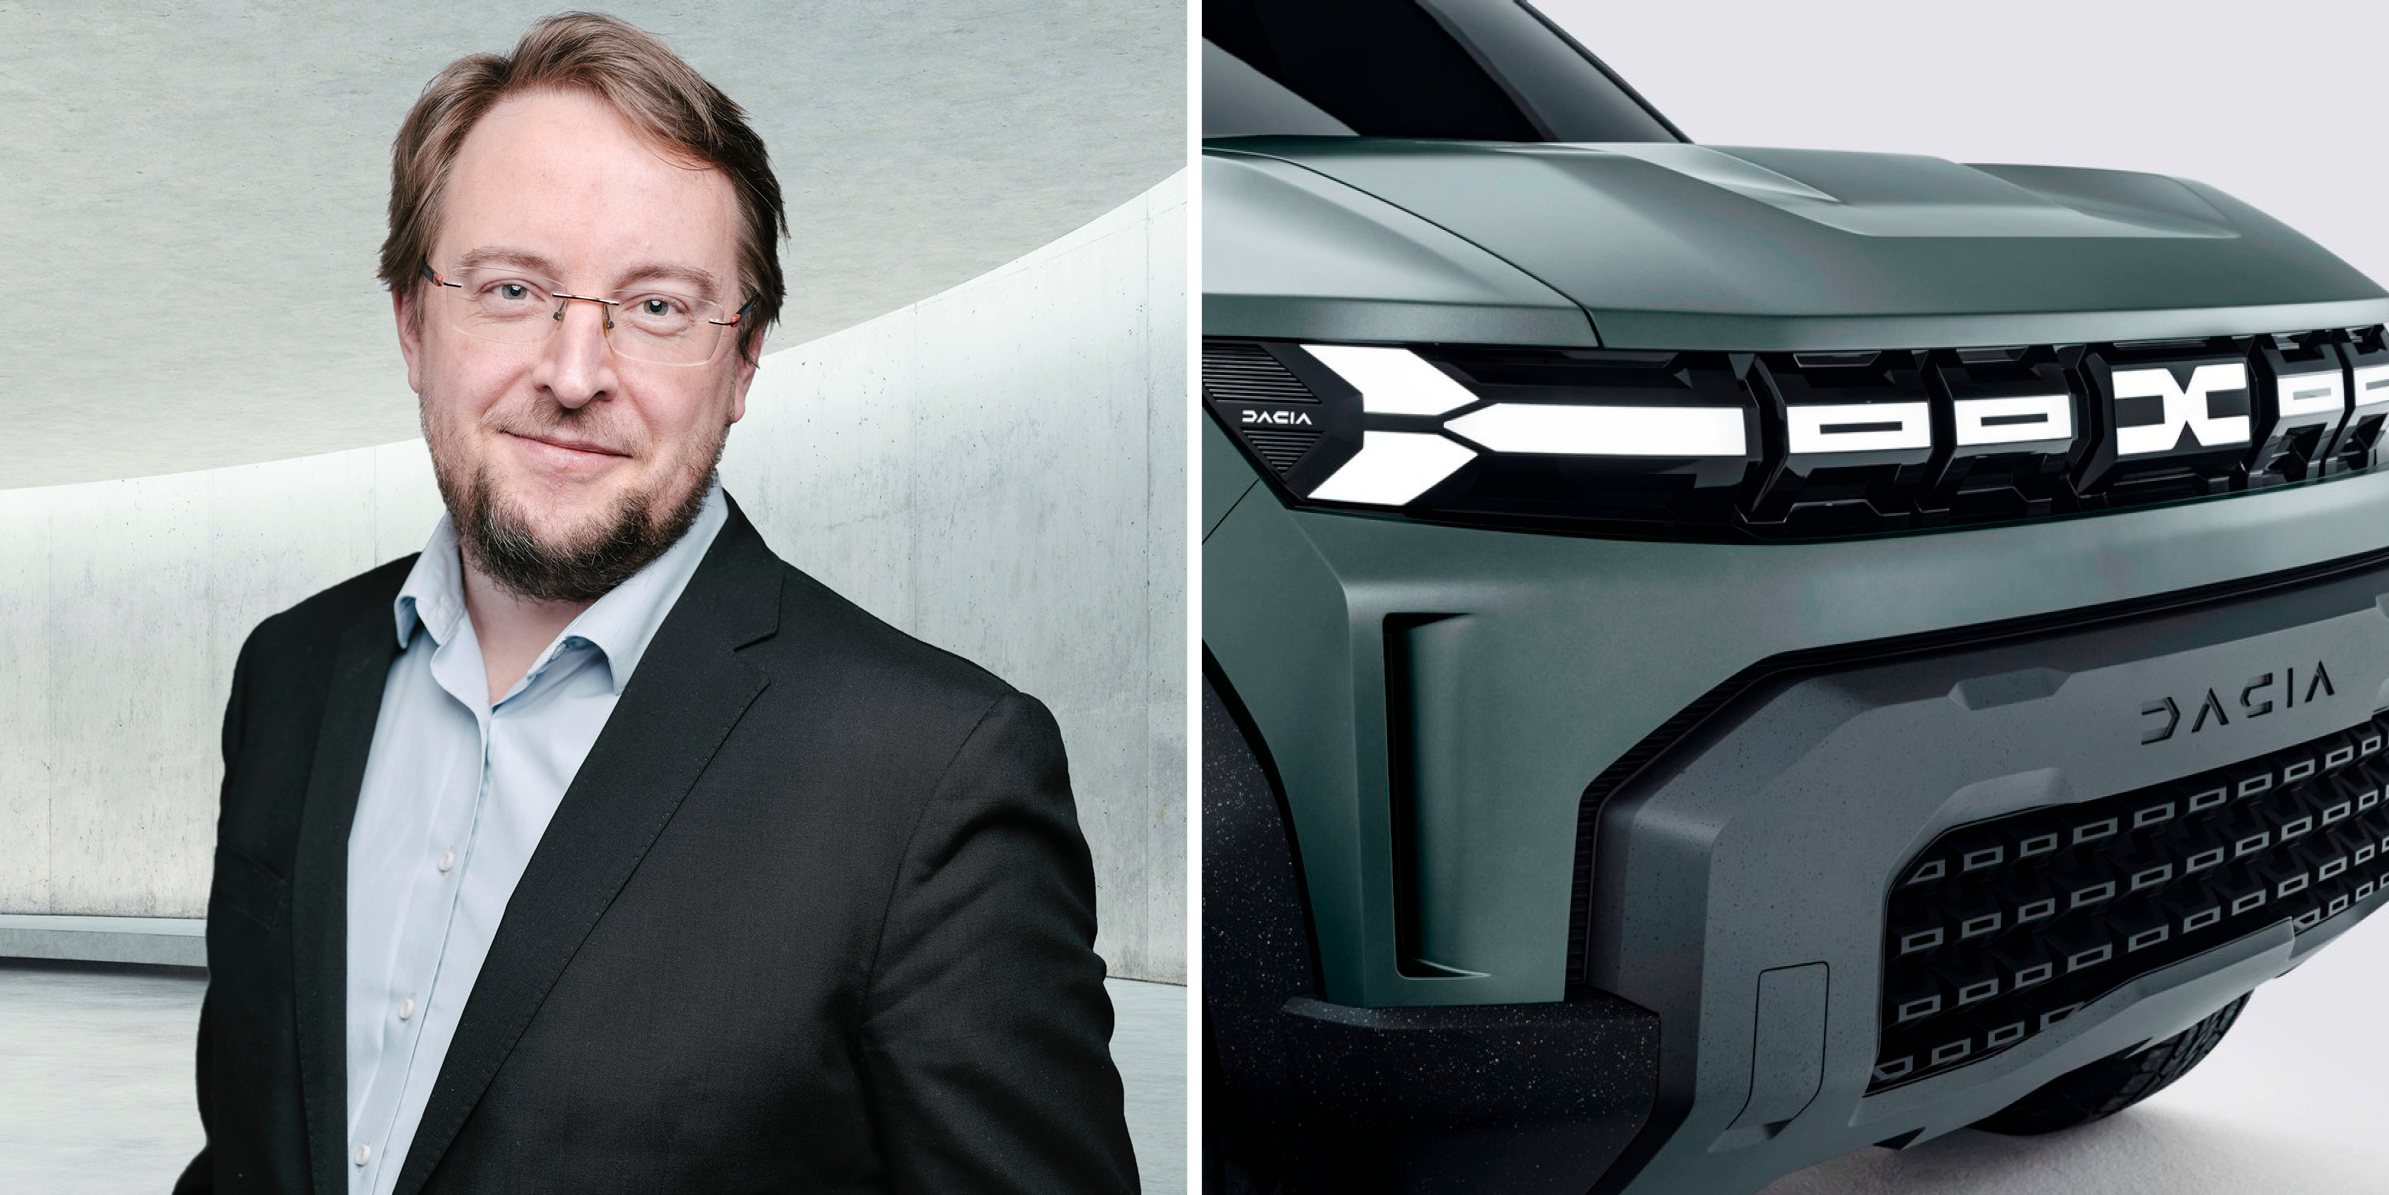 Xavier Martinet esteve à frente da Renault Portugal, entre 2013 e 2015. Agora é um dos homens-fortes ao comando da Dacia, como vice-presidente sénior da marca romena. Tem sob a sua alçada vendas, marketing e operações